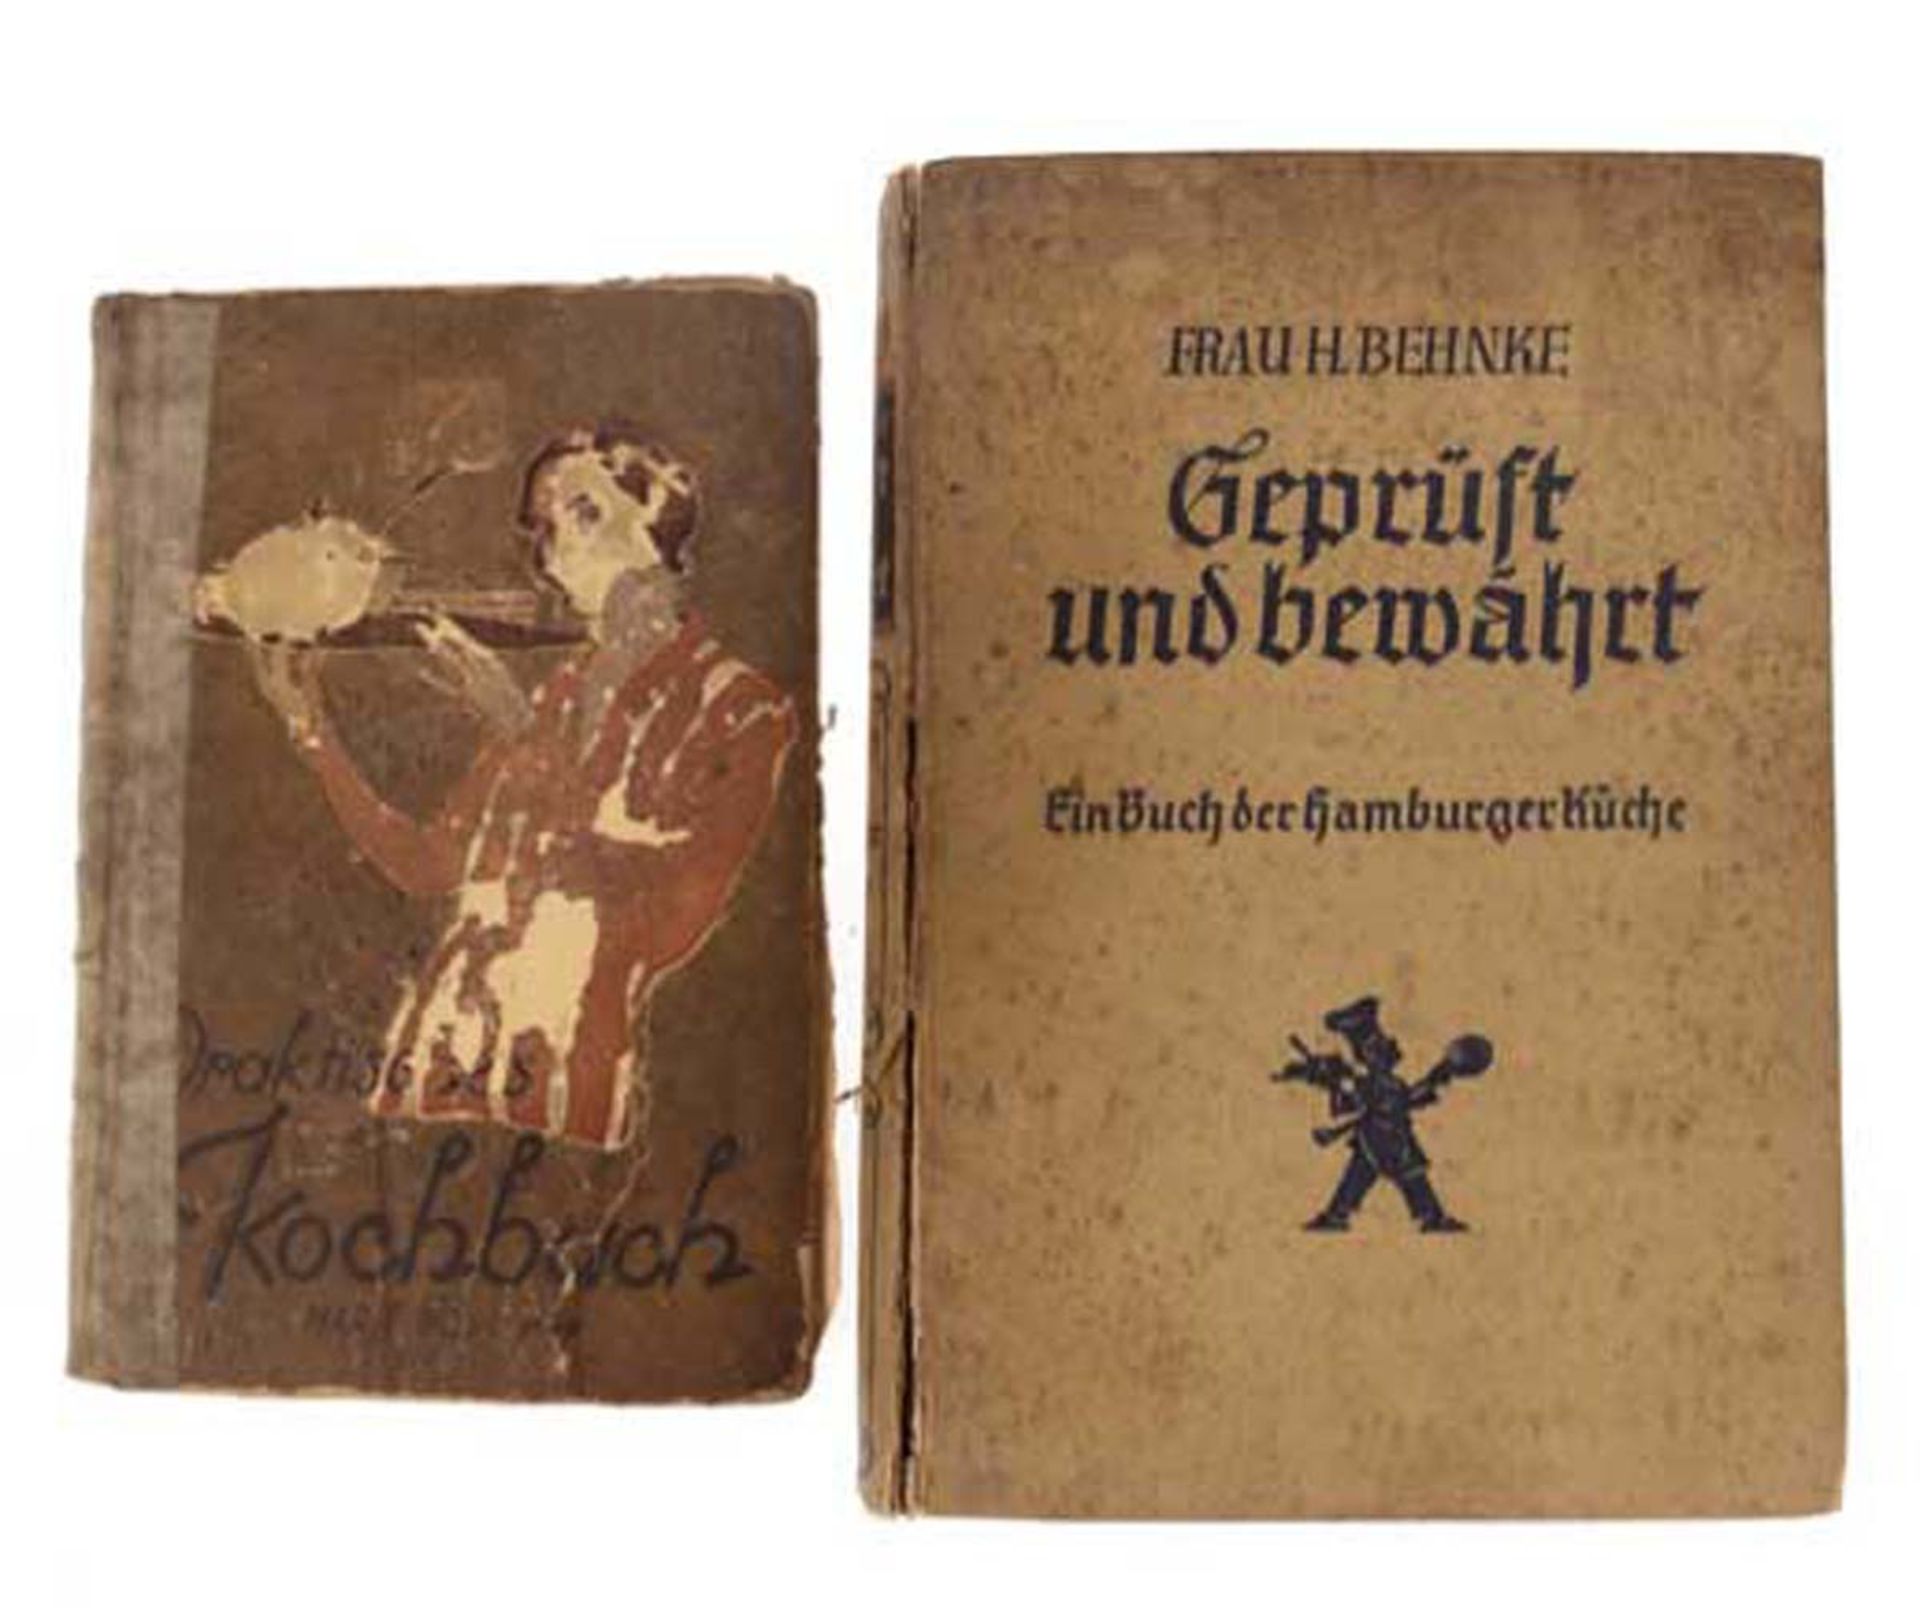 2 Kochbücher von Marie Bogs und Frau H. Behnke, 30er Jahre, schlechter Zustand, loseSeiten und am